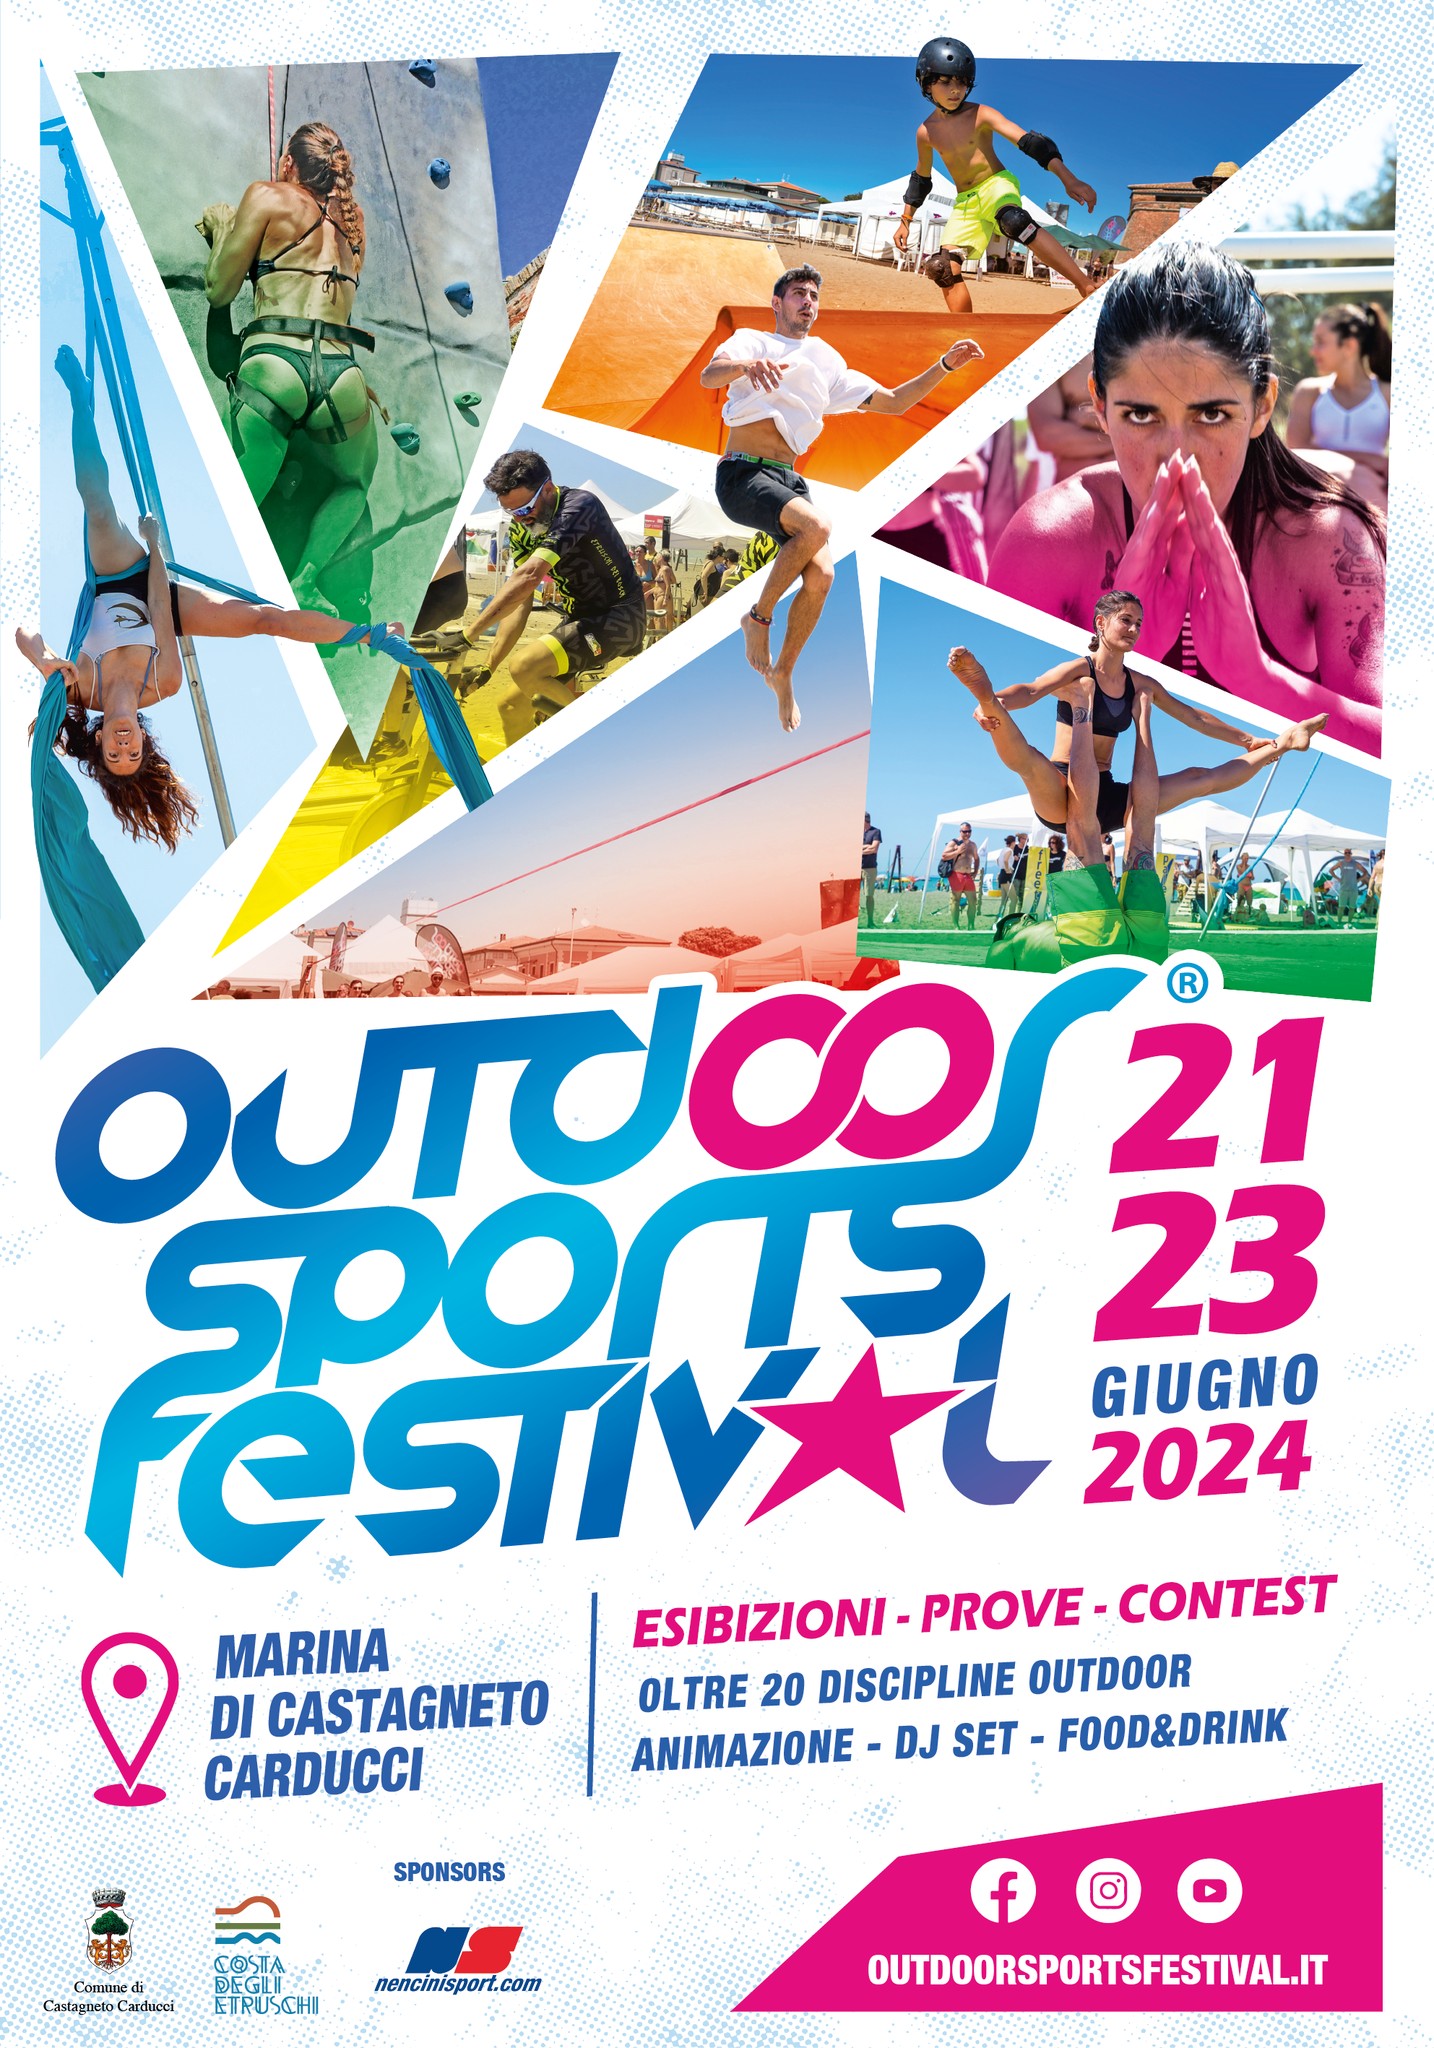 CASTAGNETO CARDUCCI (LI): Outdoor Sports Festival 2024